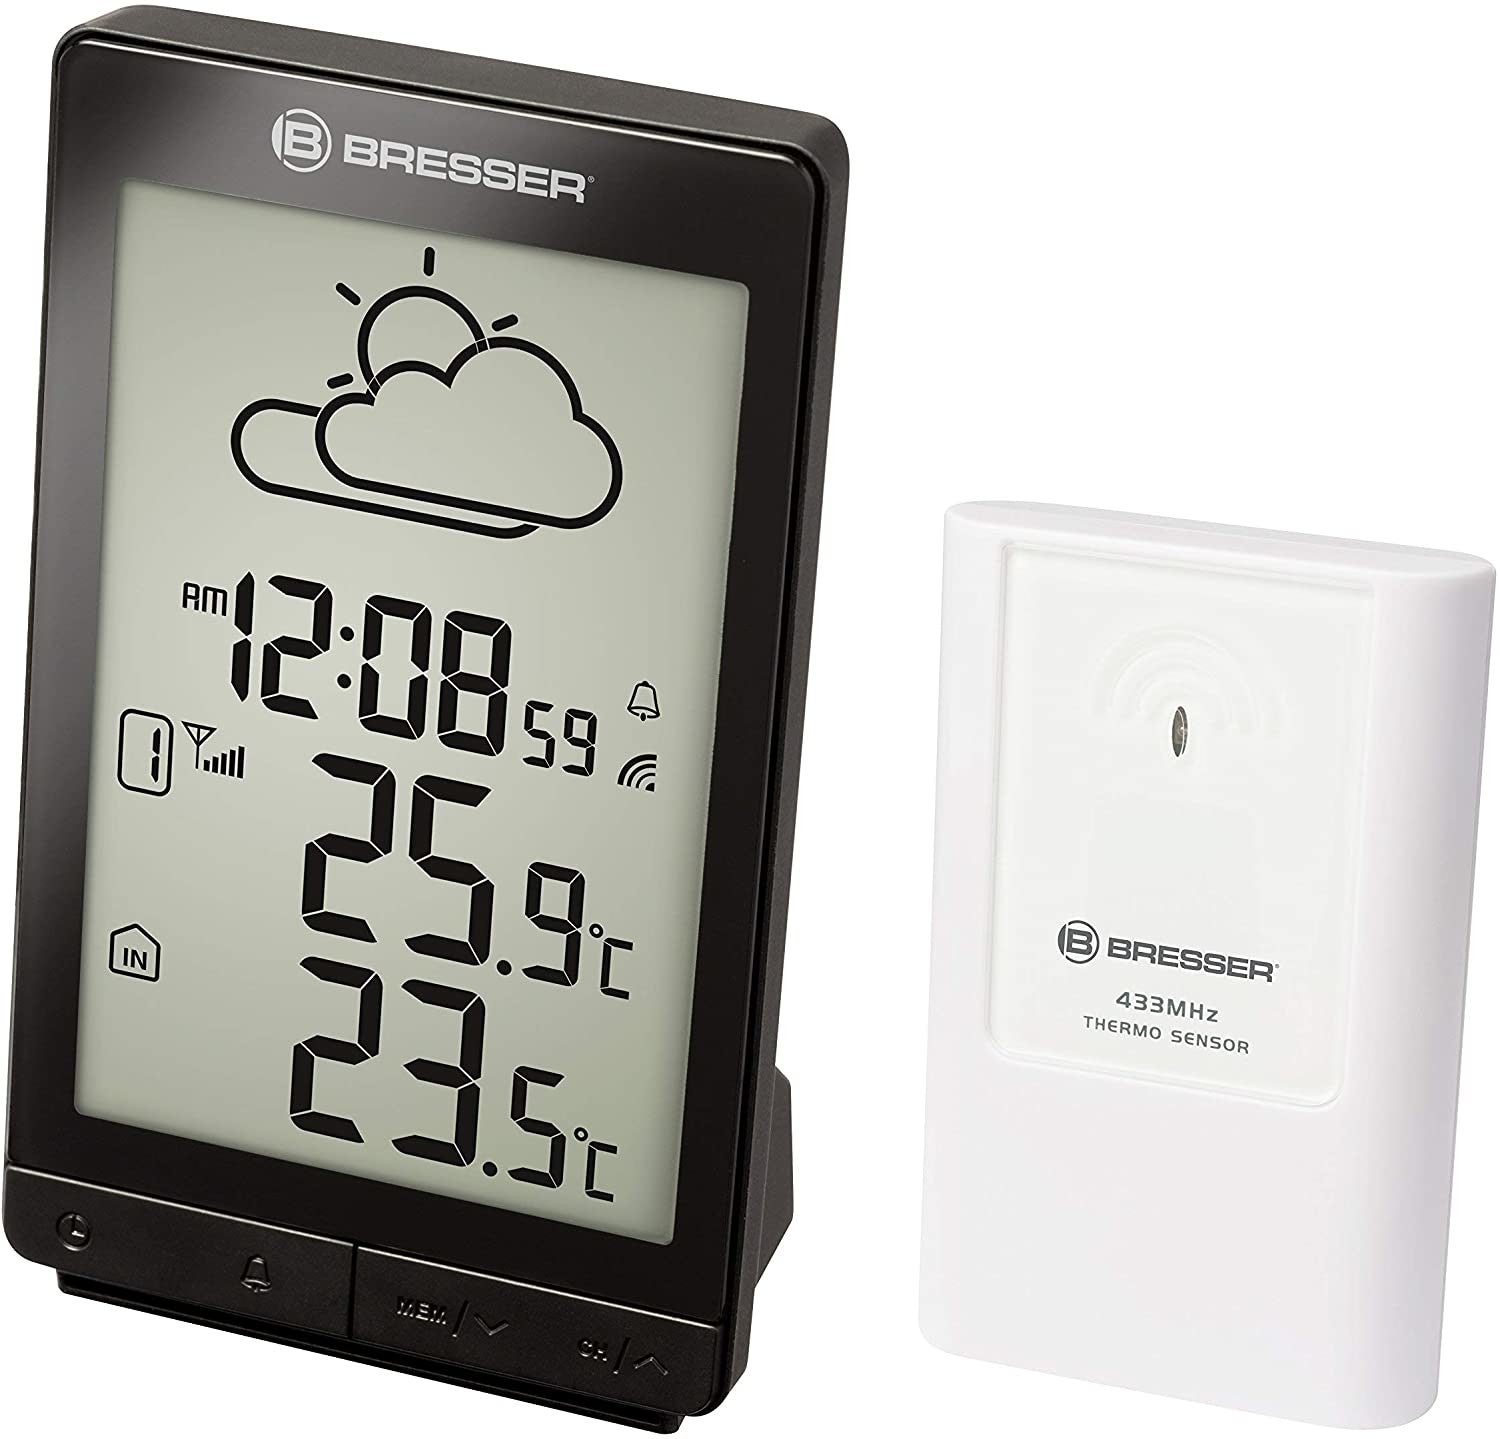 Station météo avec thermomètre et grand écran LCD - Bresser - www